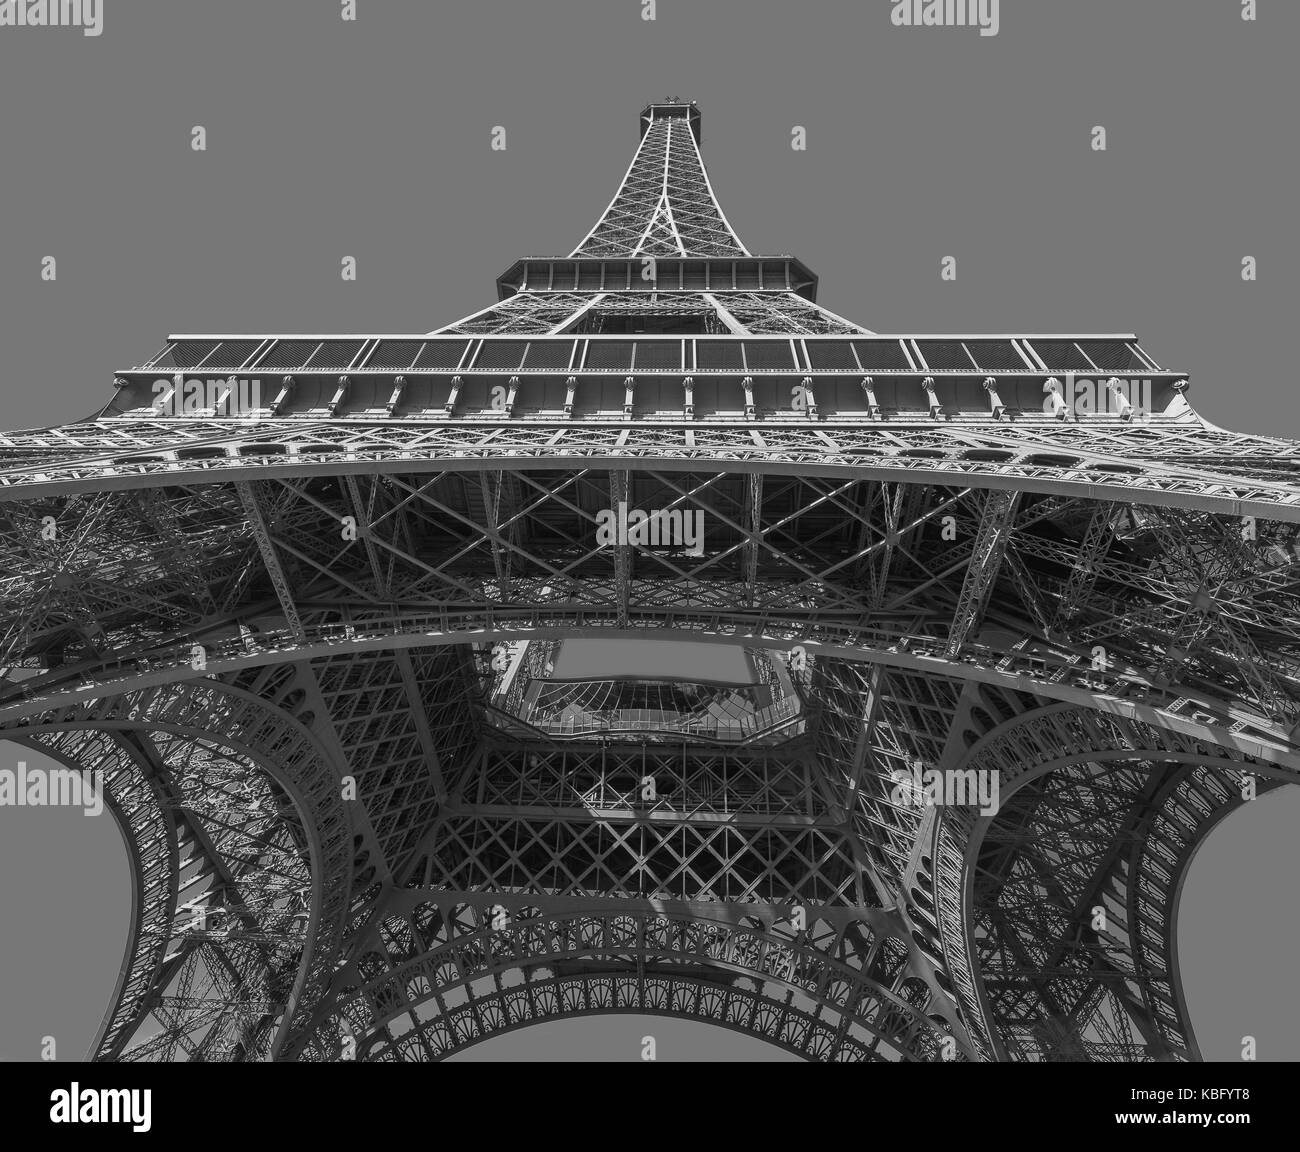 Image architecture monochrome de la Tour Eiffel sur fond gris Banque D'Images